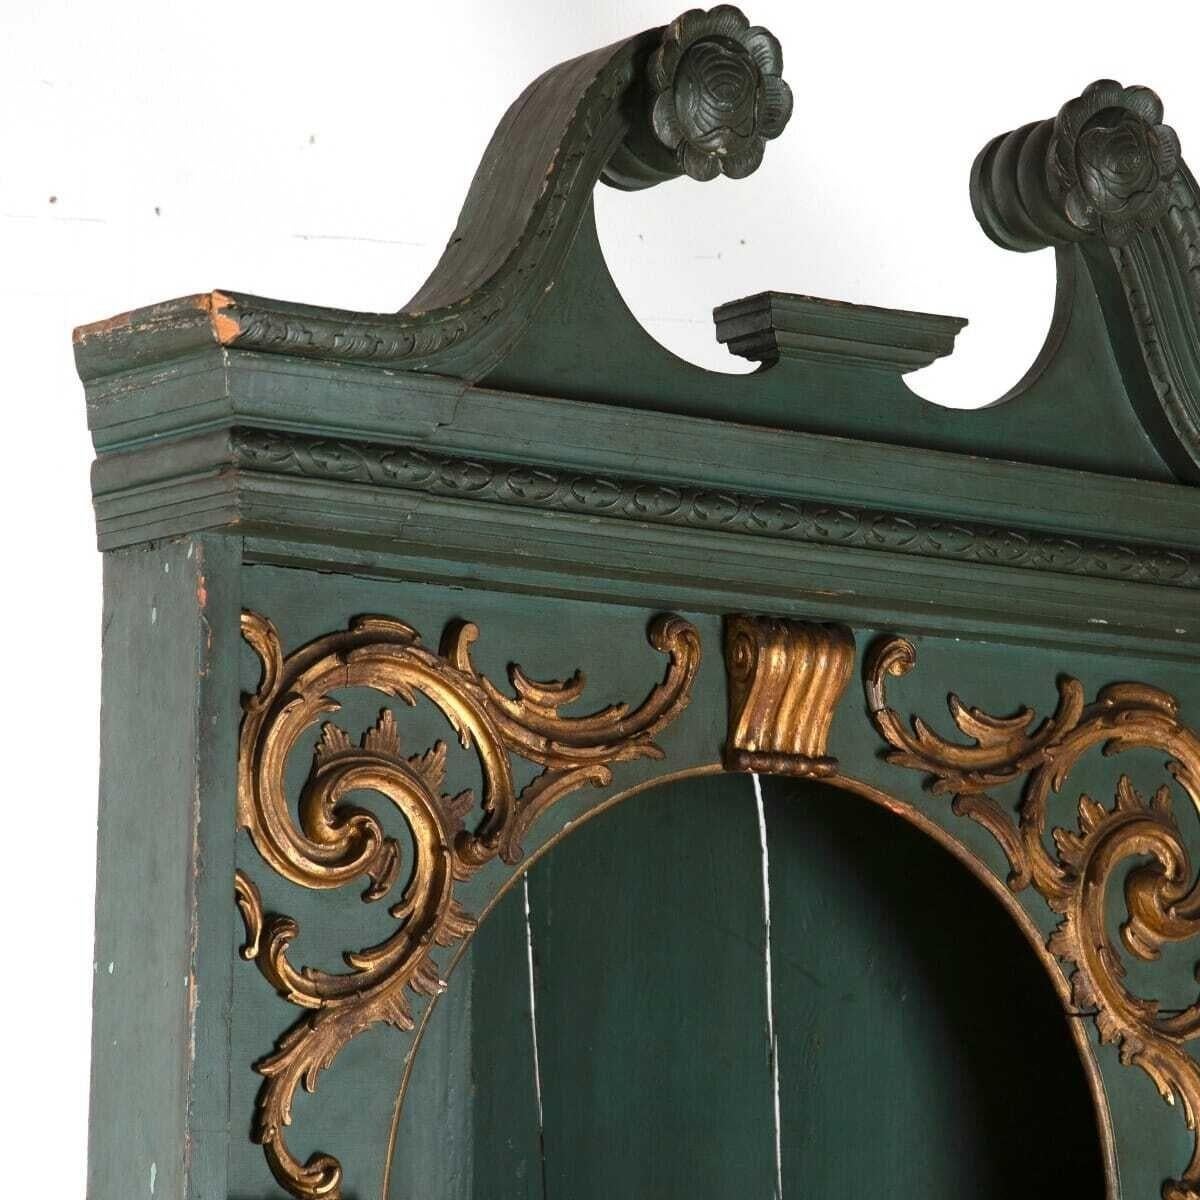 Großer bemalter und vergoldeter Eckschrank aus dem 18. Jahrhundert. Dieser Eckschrank weist einige sehr schöne Merkmale auf, darunter korinthische Säulen und einen Schwanenhalsgiebel. Das gesamte vergoldete Holz ist geschnitzt. Ein wunderbares und